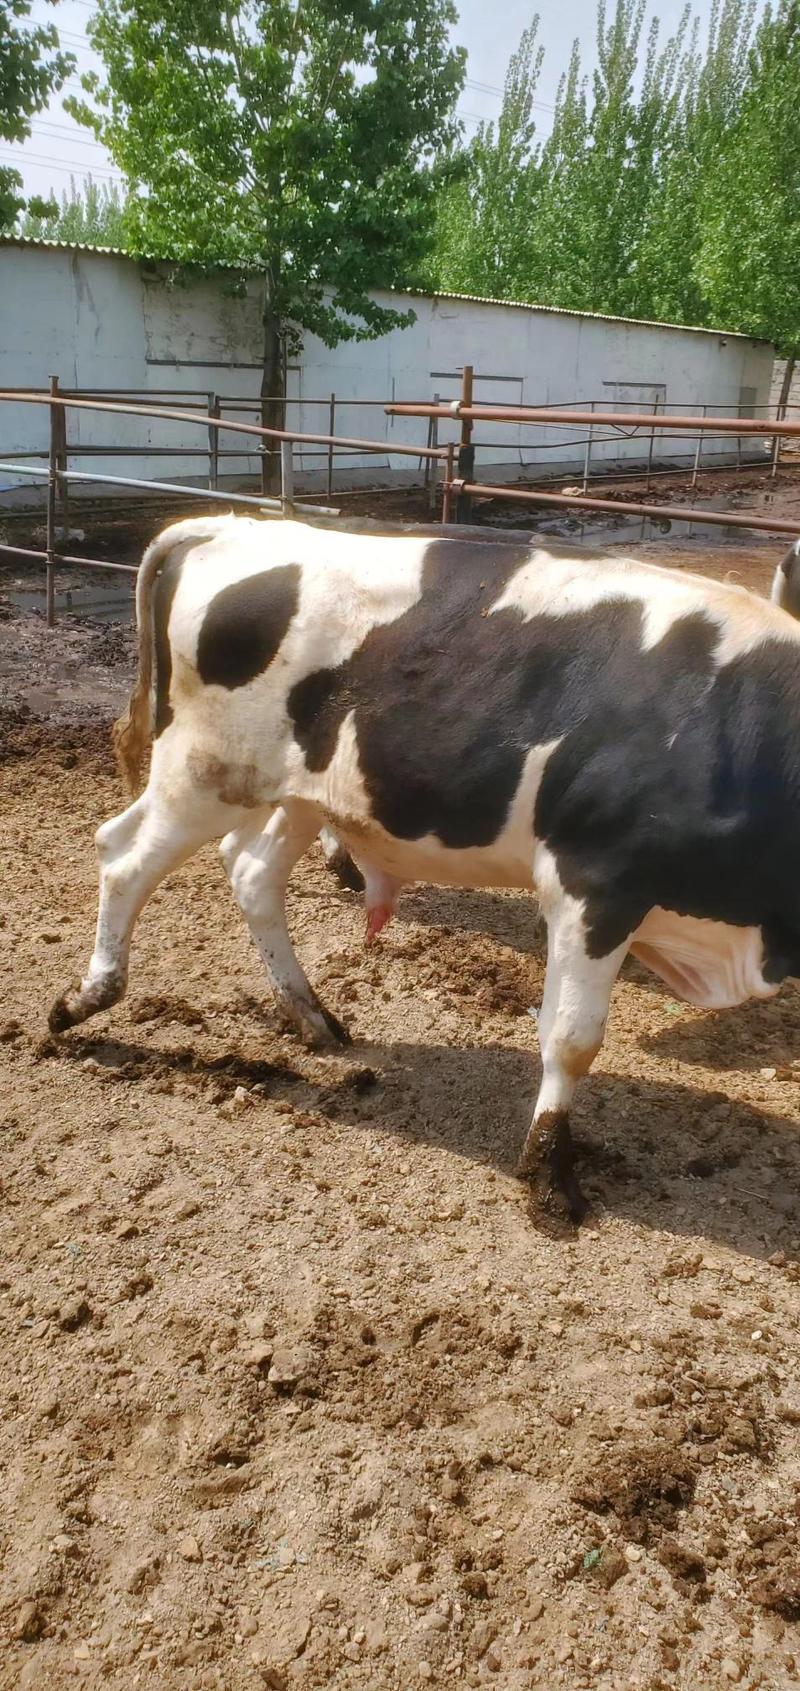 荷斯坦牛犊大量出售价格优惠支持视频看货欢迎来电咨询洽谈